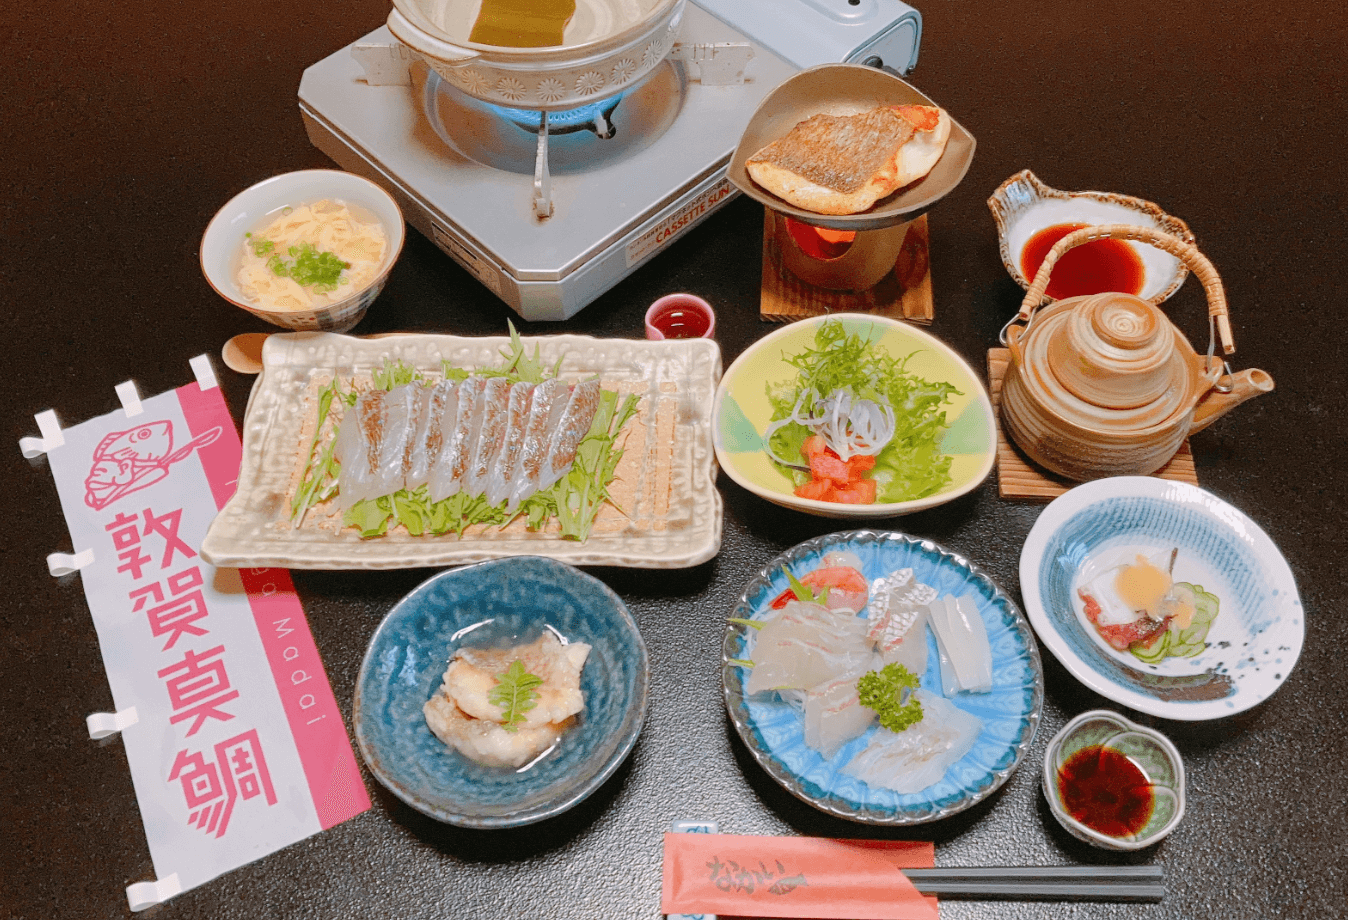 Cコース・“敦賀真鯛フルコース”の昼食と港町めぐり